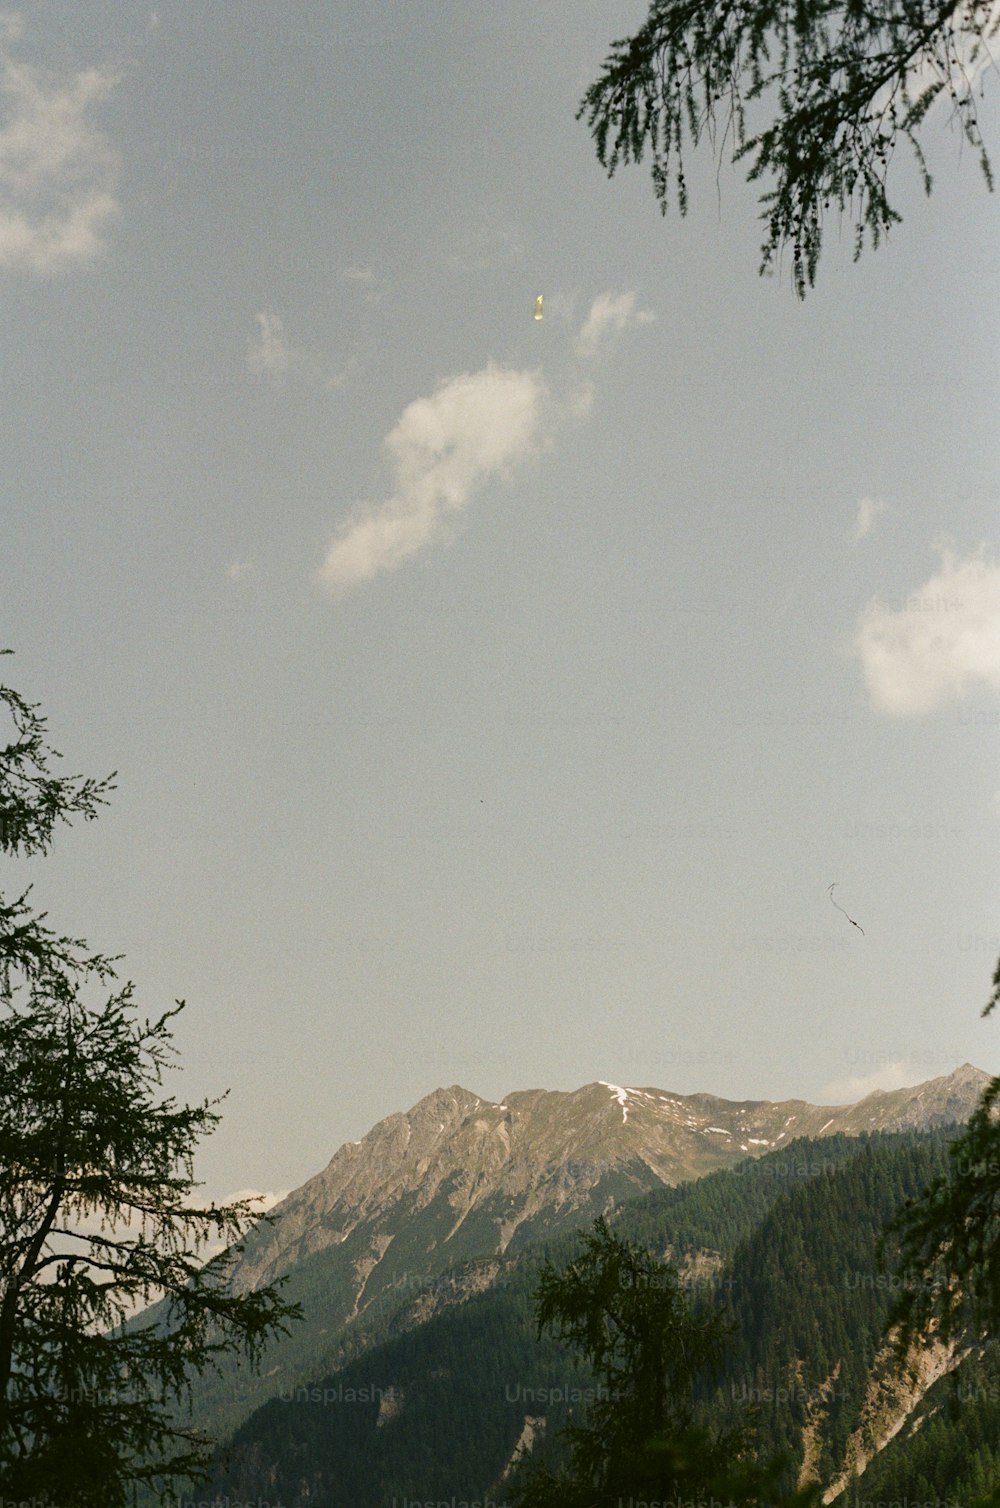 uma vista de uma montanha com uma pipa voando no céu